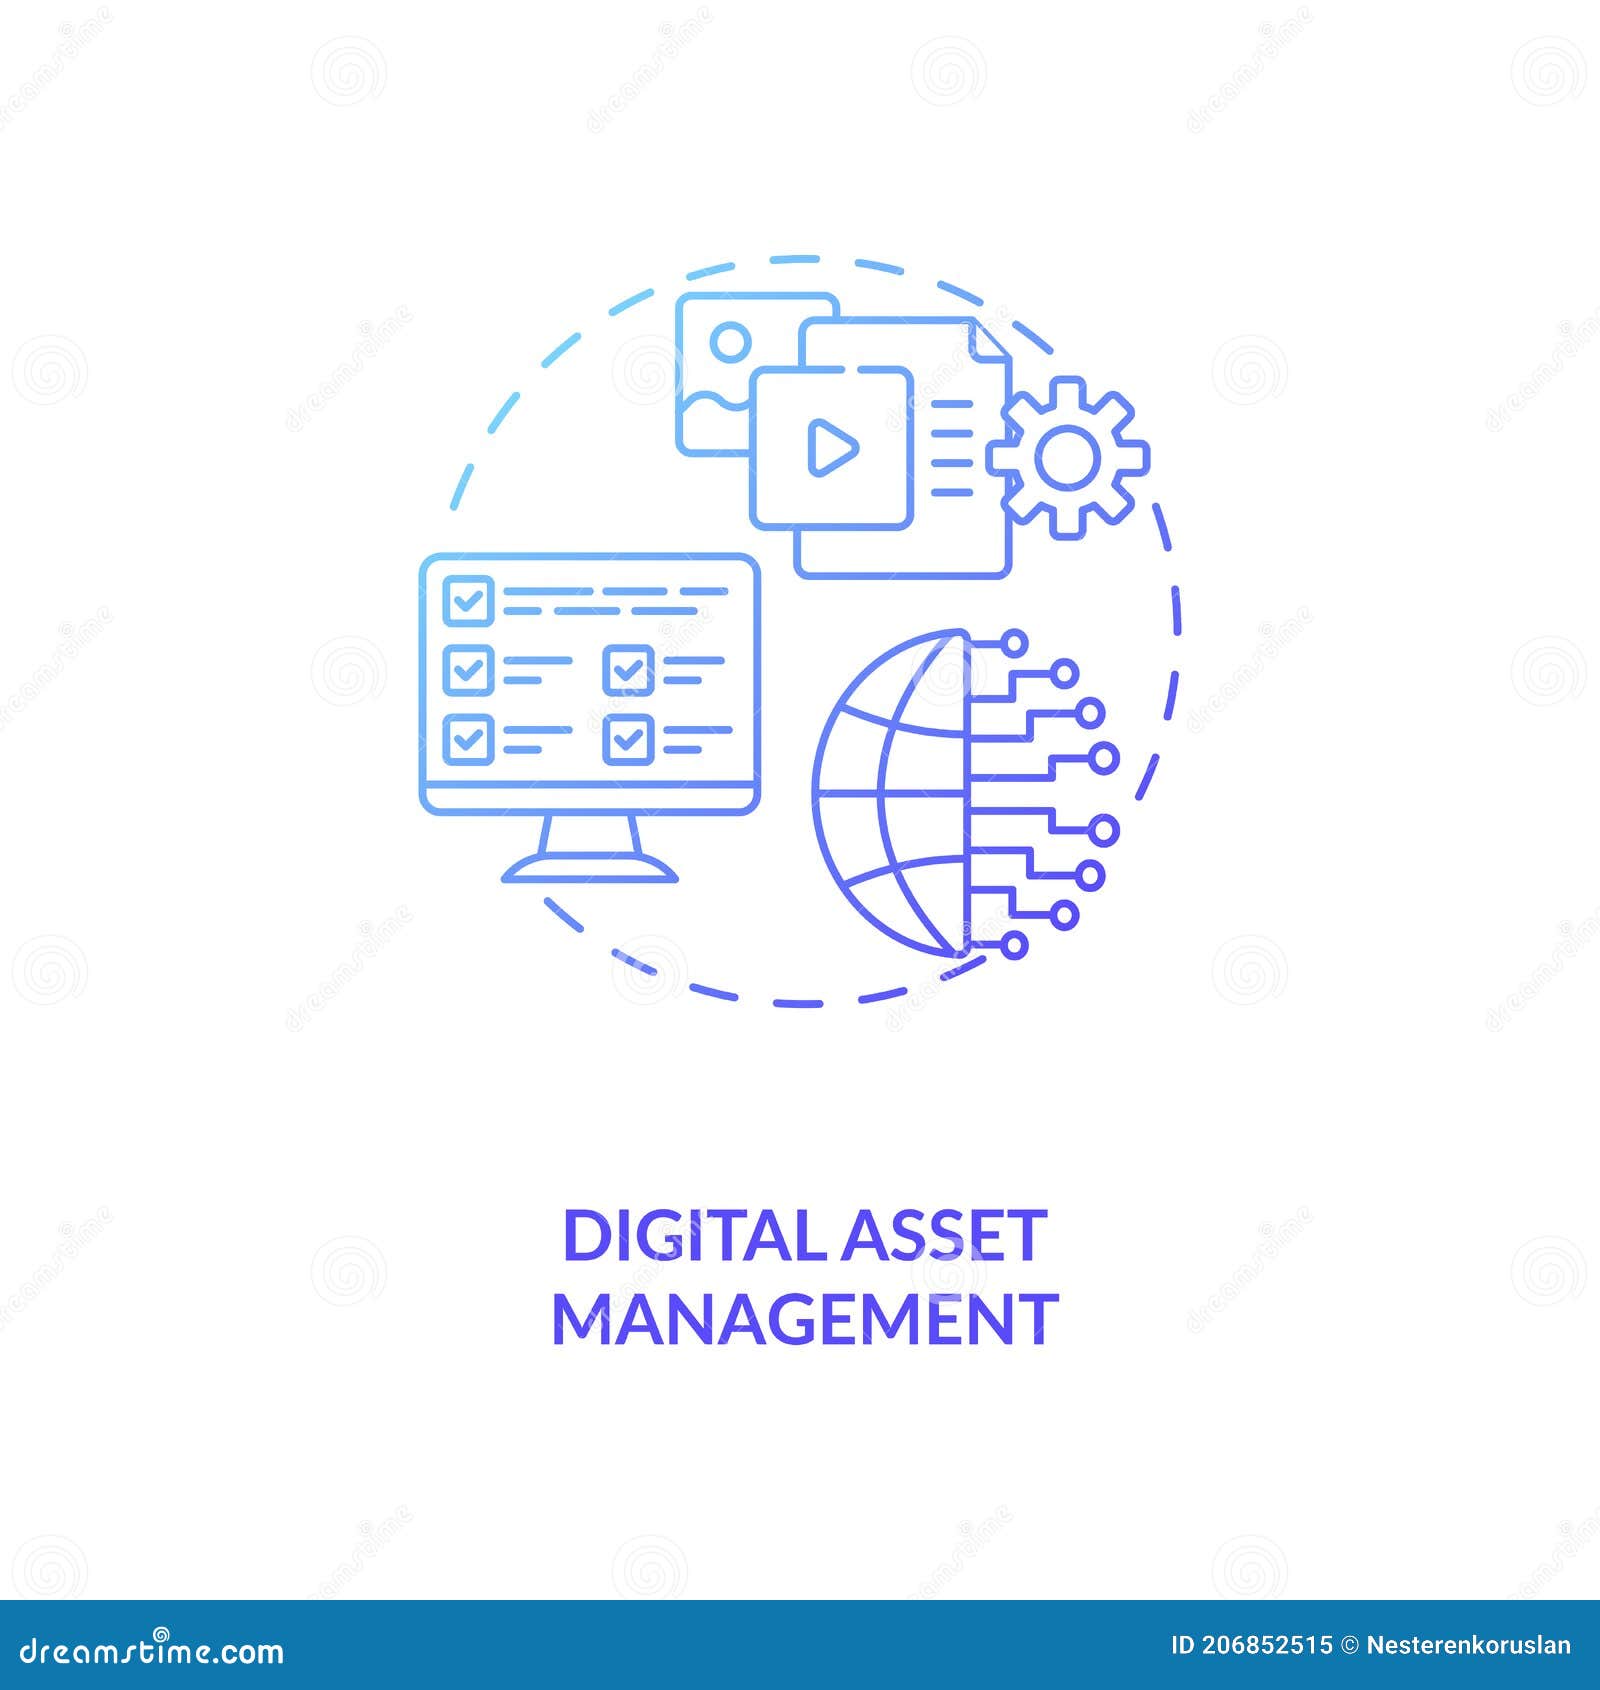 digital asset management concept icon